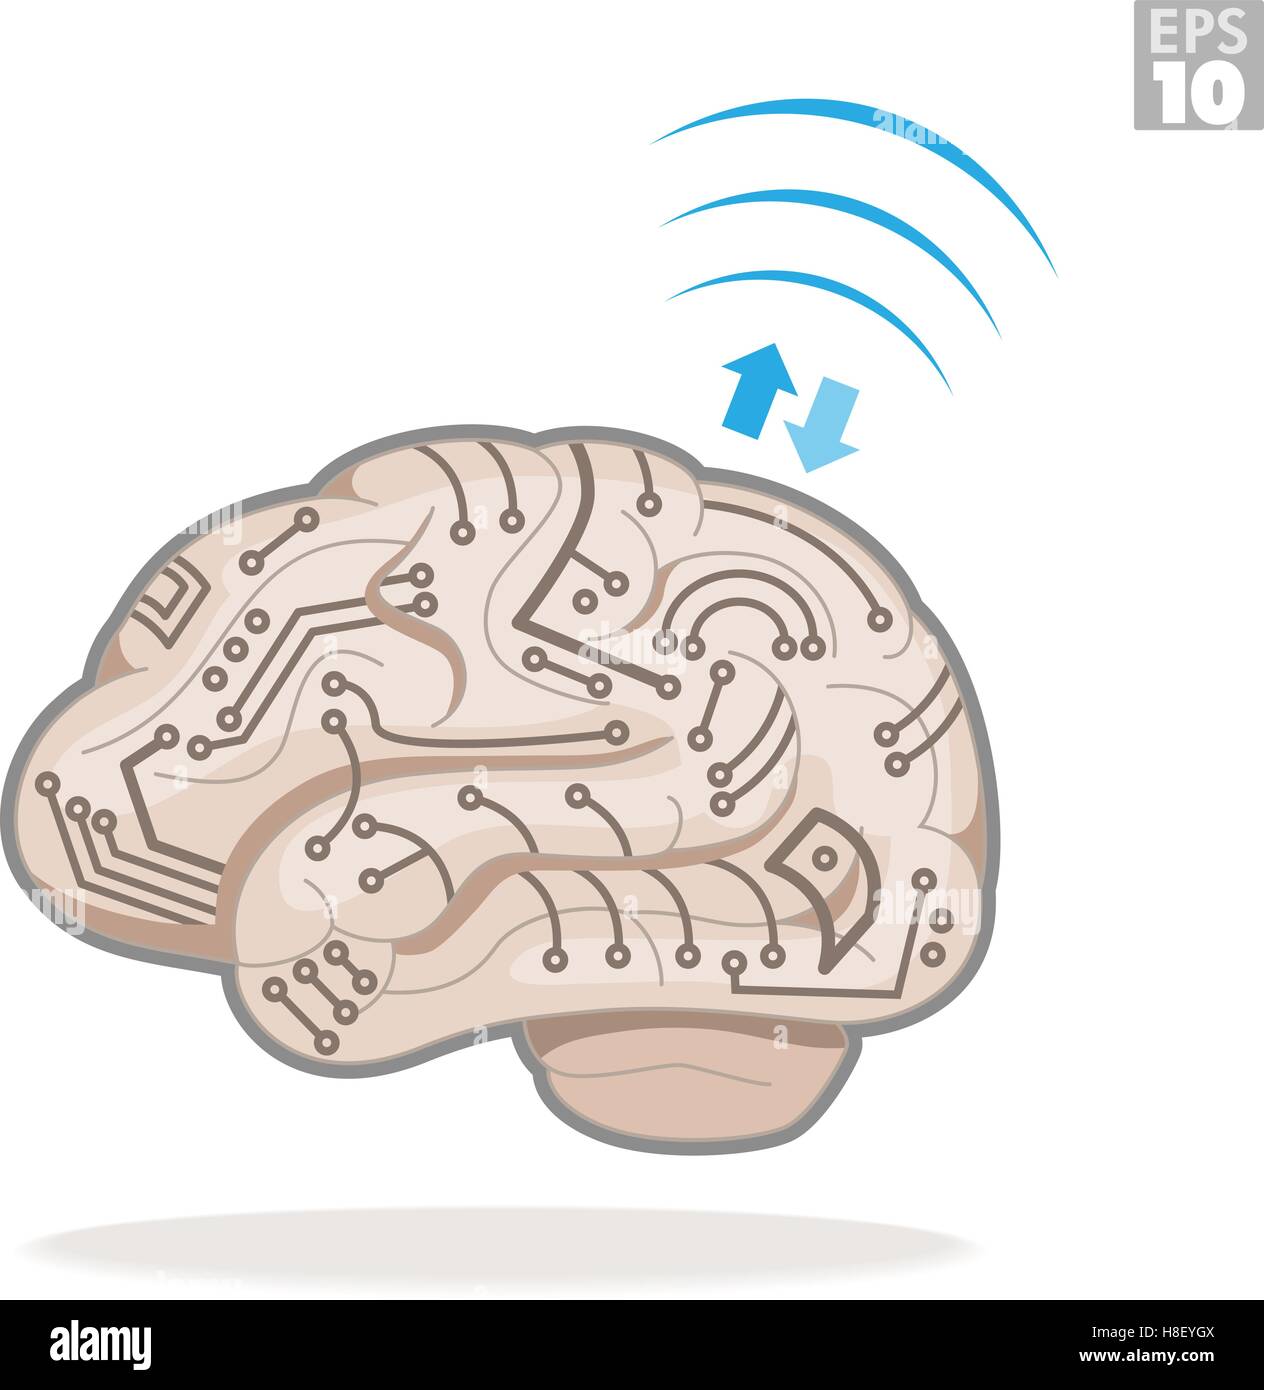 Cervello umano con i circuiti elettronici, elaborazione di informazioni e il trasferimento dei dati in modalità wireless. Illustrazione Vettoriale